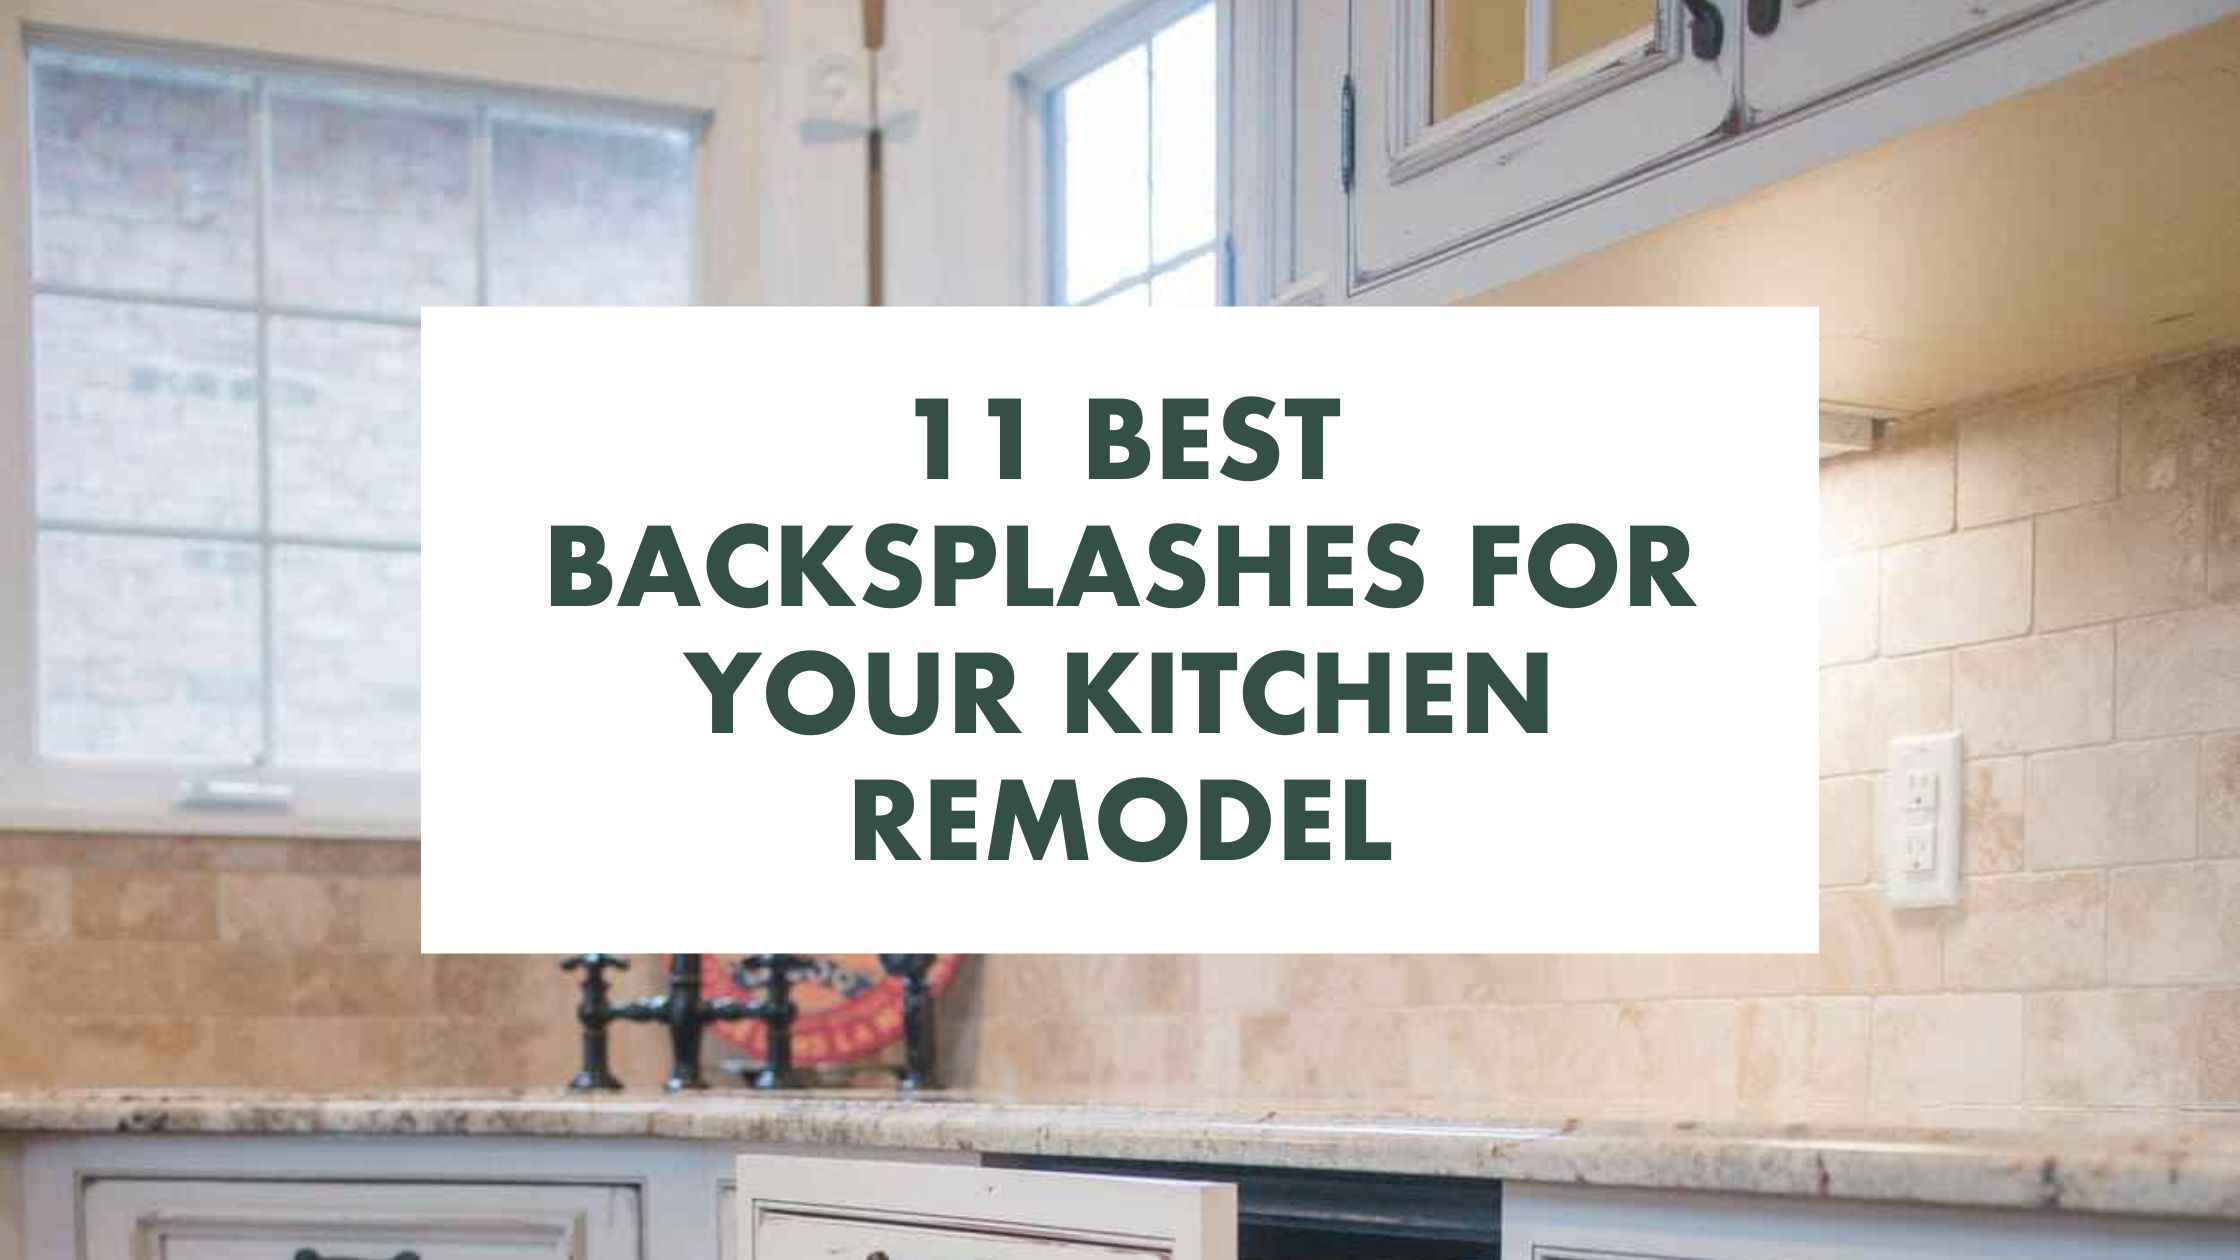 11 Best Backsplashes for Your Kitchen Remodel